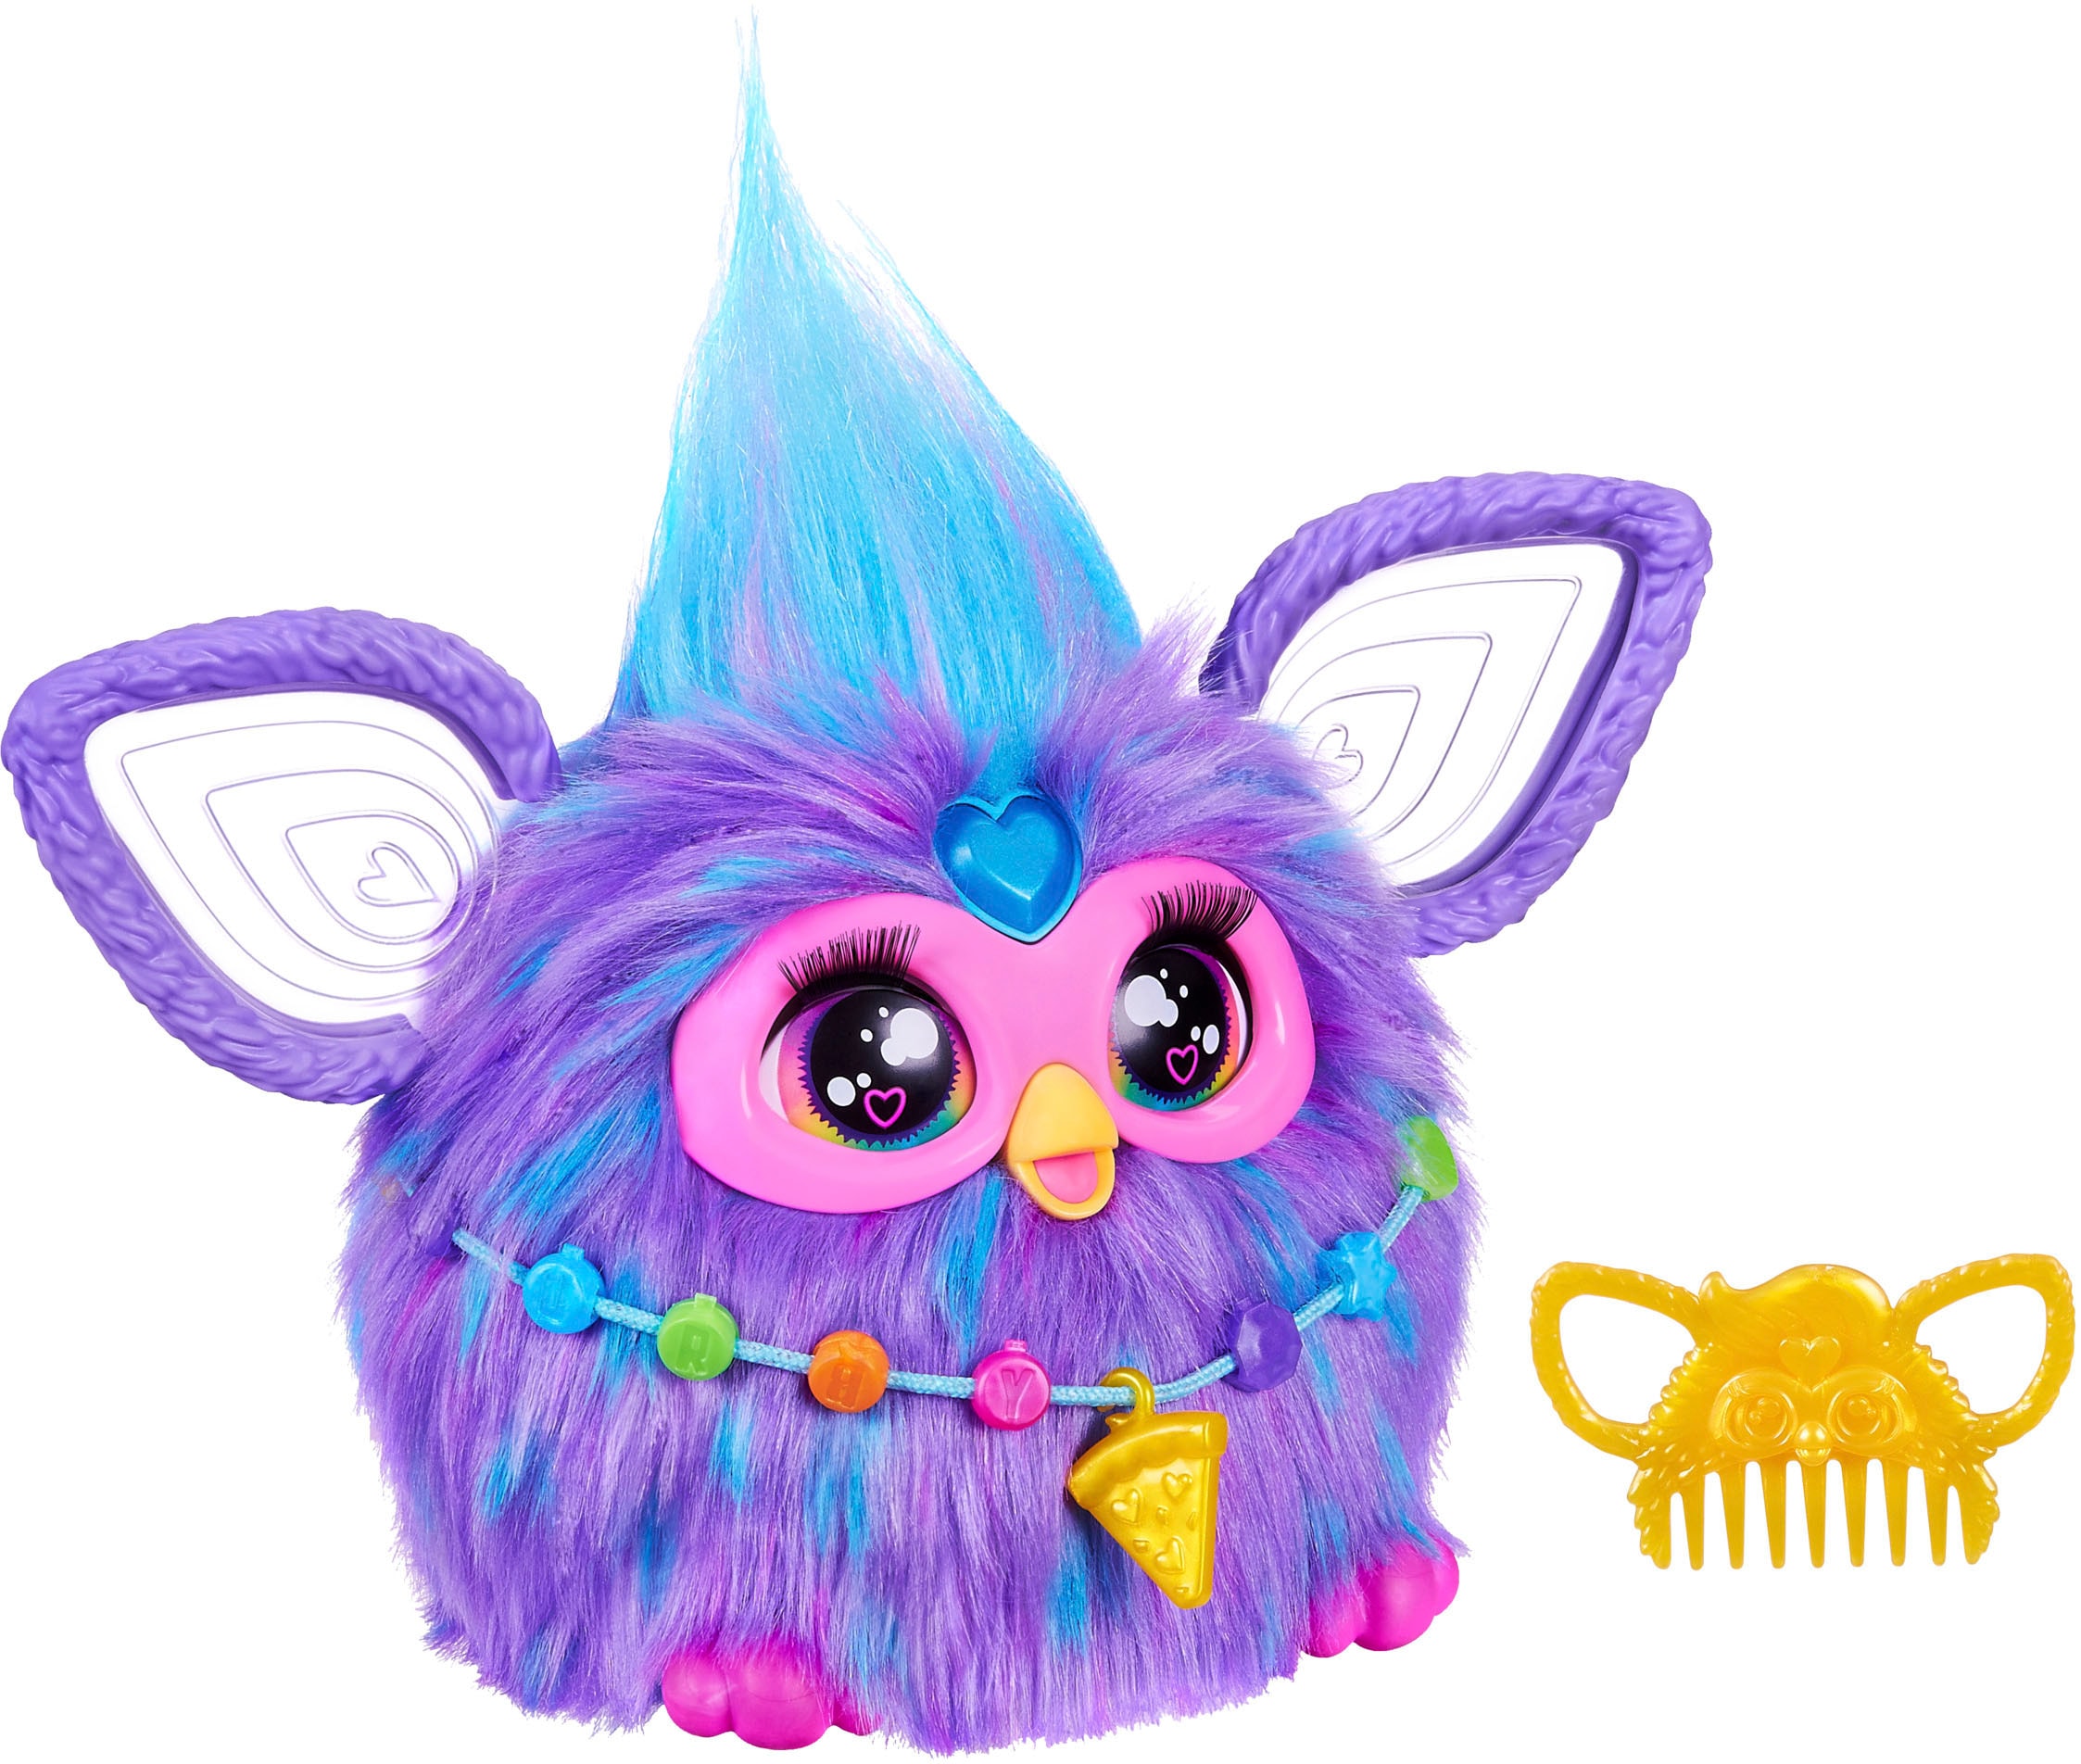 Plüschfigur »Furby, lila«